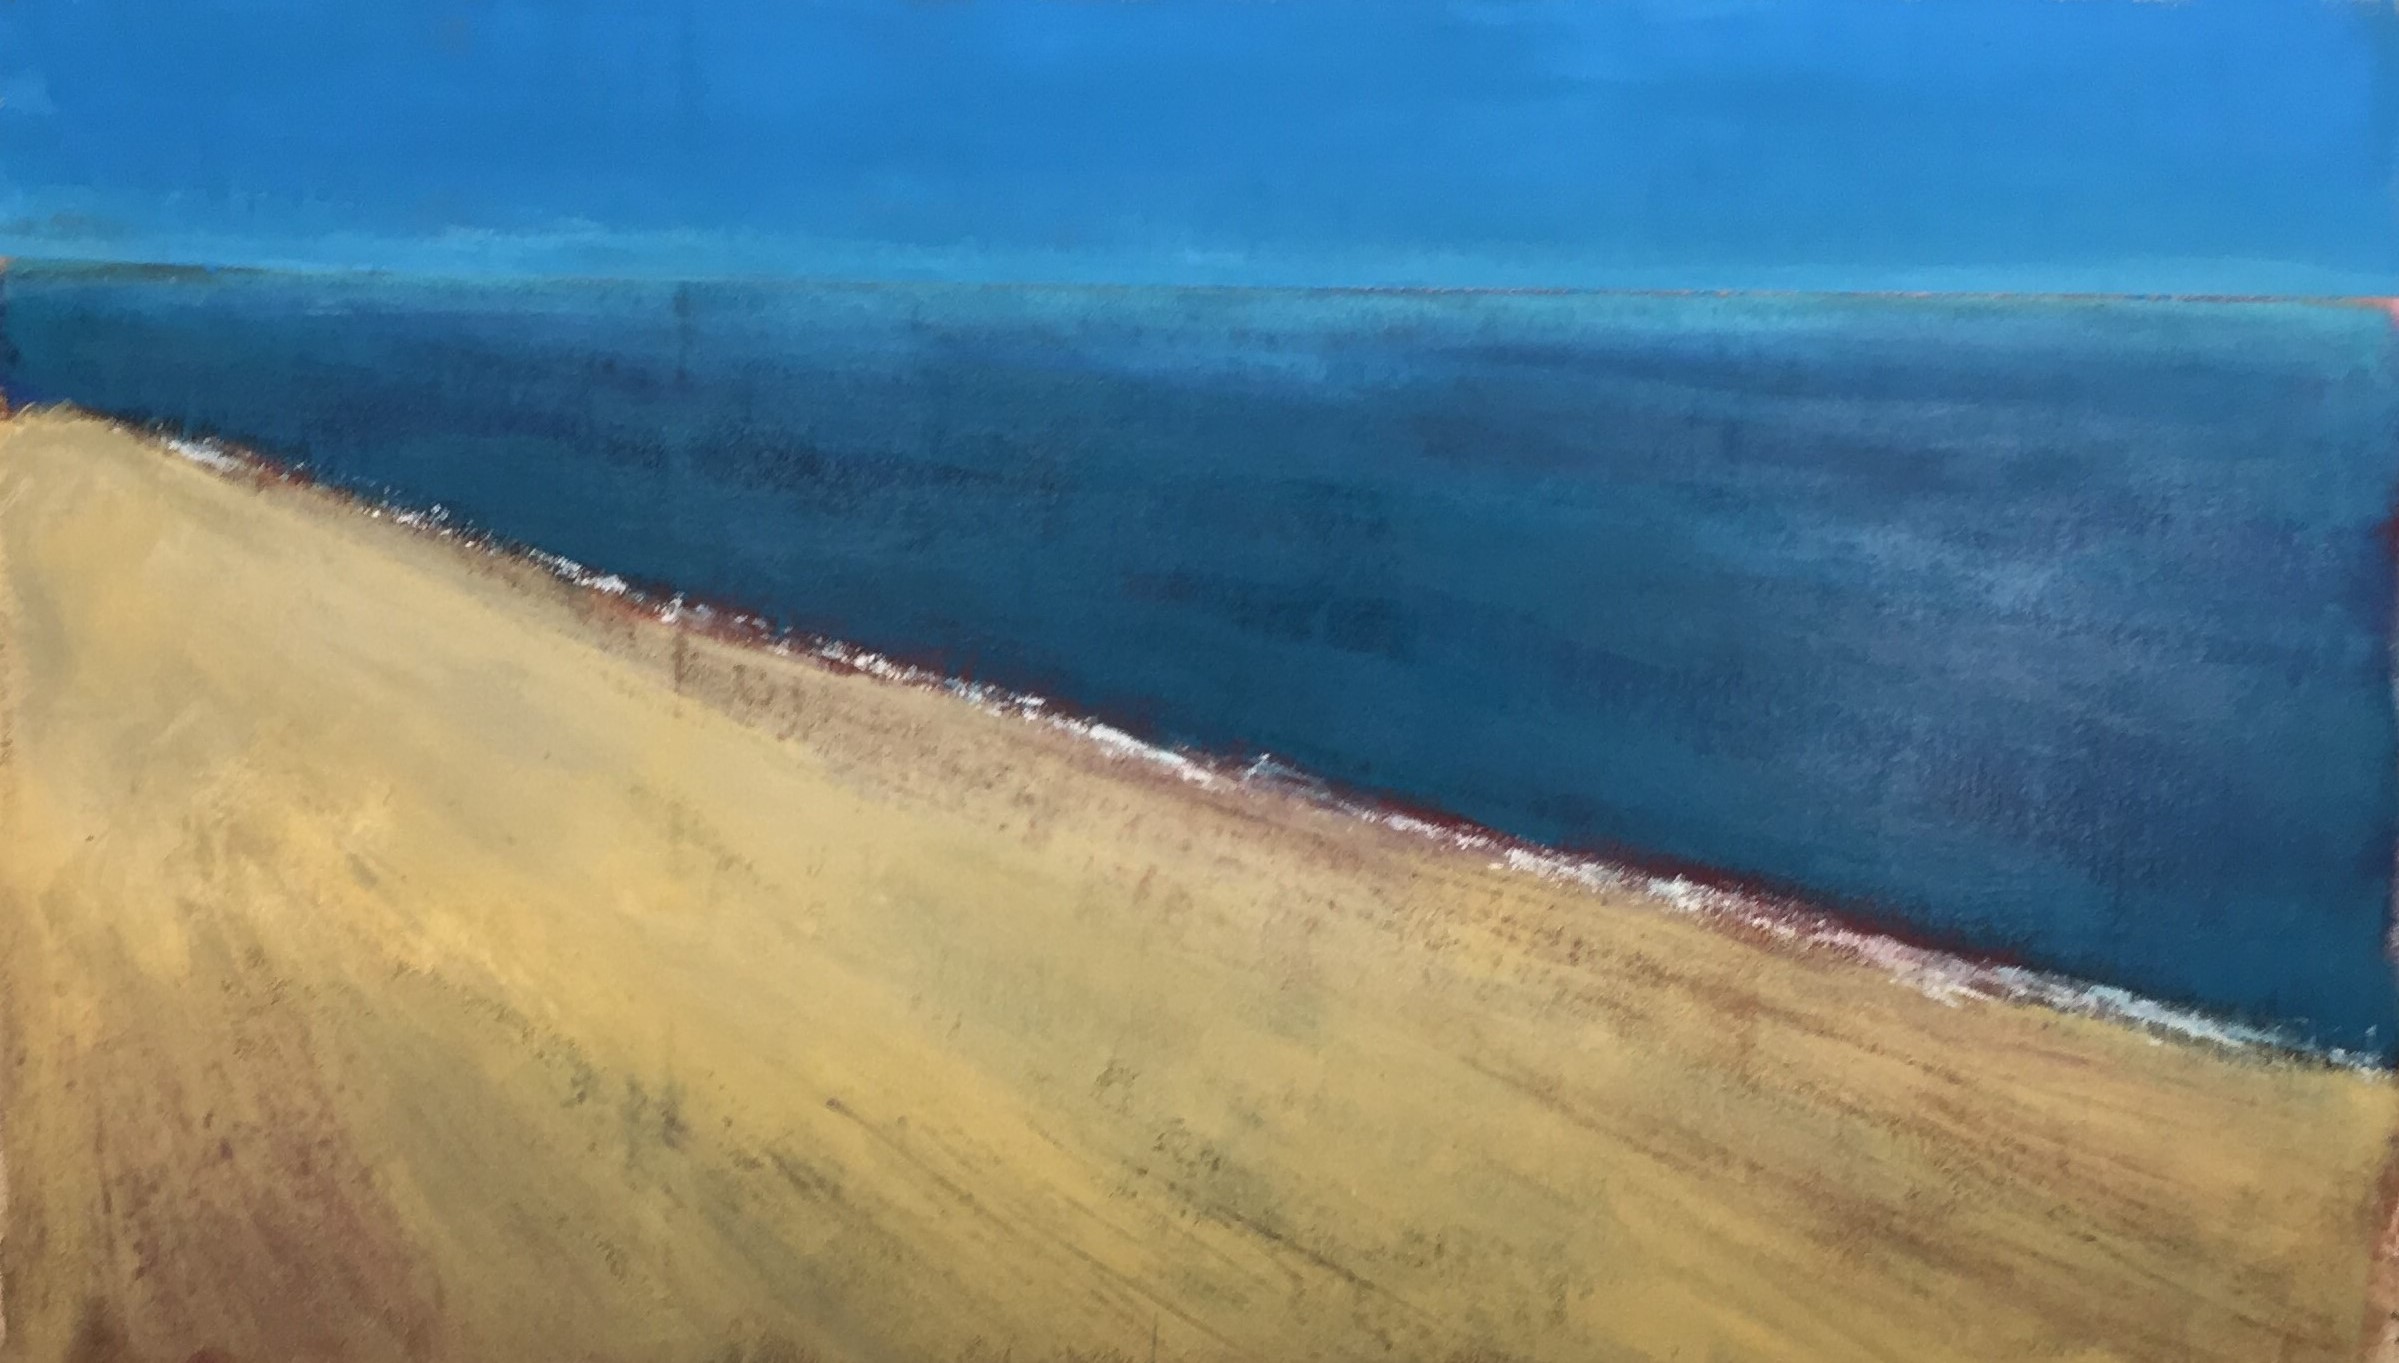 N° 4093 - La mer à Maguelone - Acrylique et pigments sur toile - 65 x 115 cm - 19 février 2018